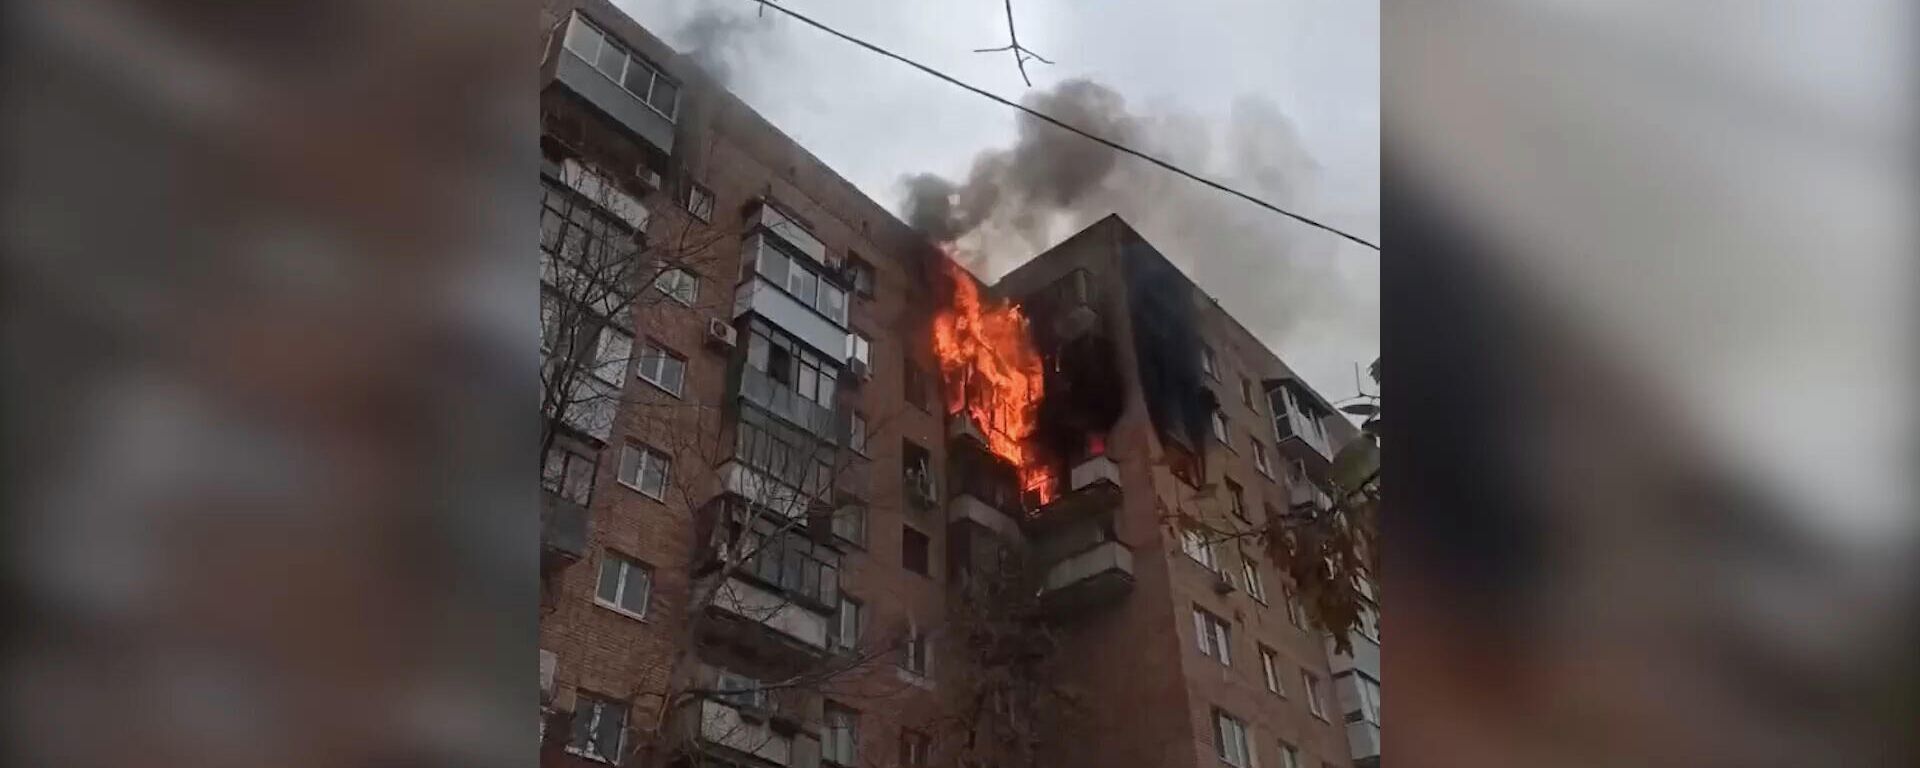 Пожар в девятиэтажном доме в Самаре - Sputnik Արմենիա, 1920, 20.10.2021